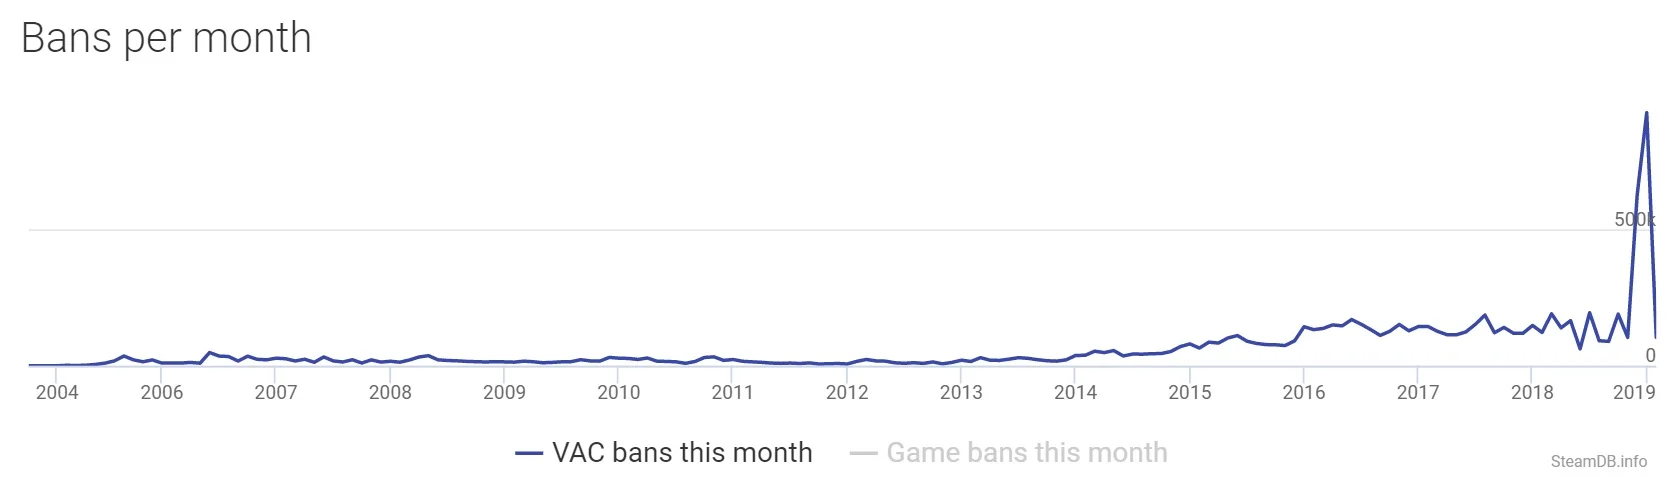 «Спасибо бесплатному CS:GO». В январе Valve Anti-Cheat забанила 900 тыс. аккаунтов. Это рекорд - фото 4